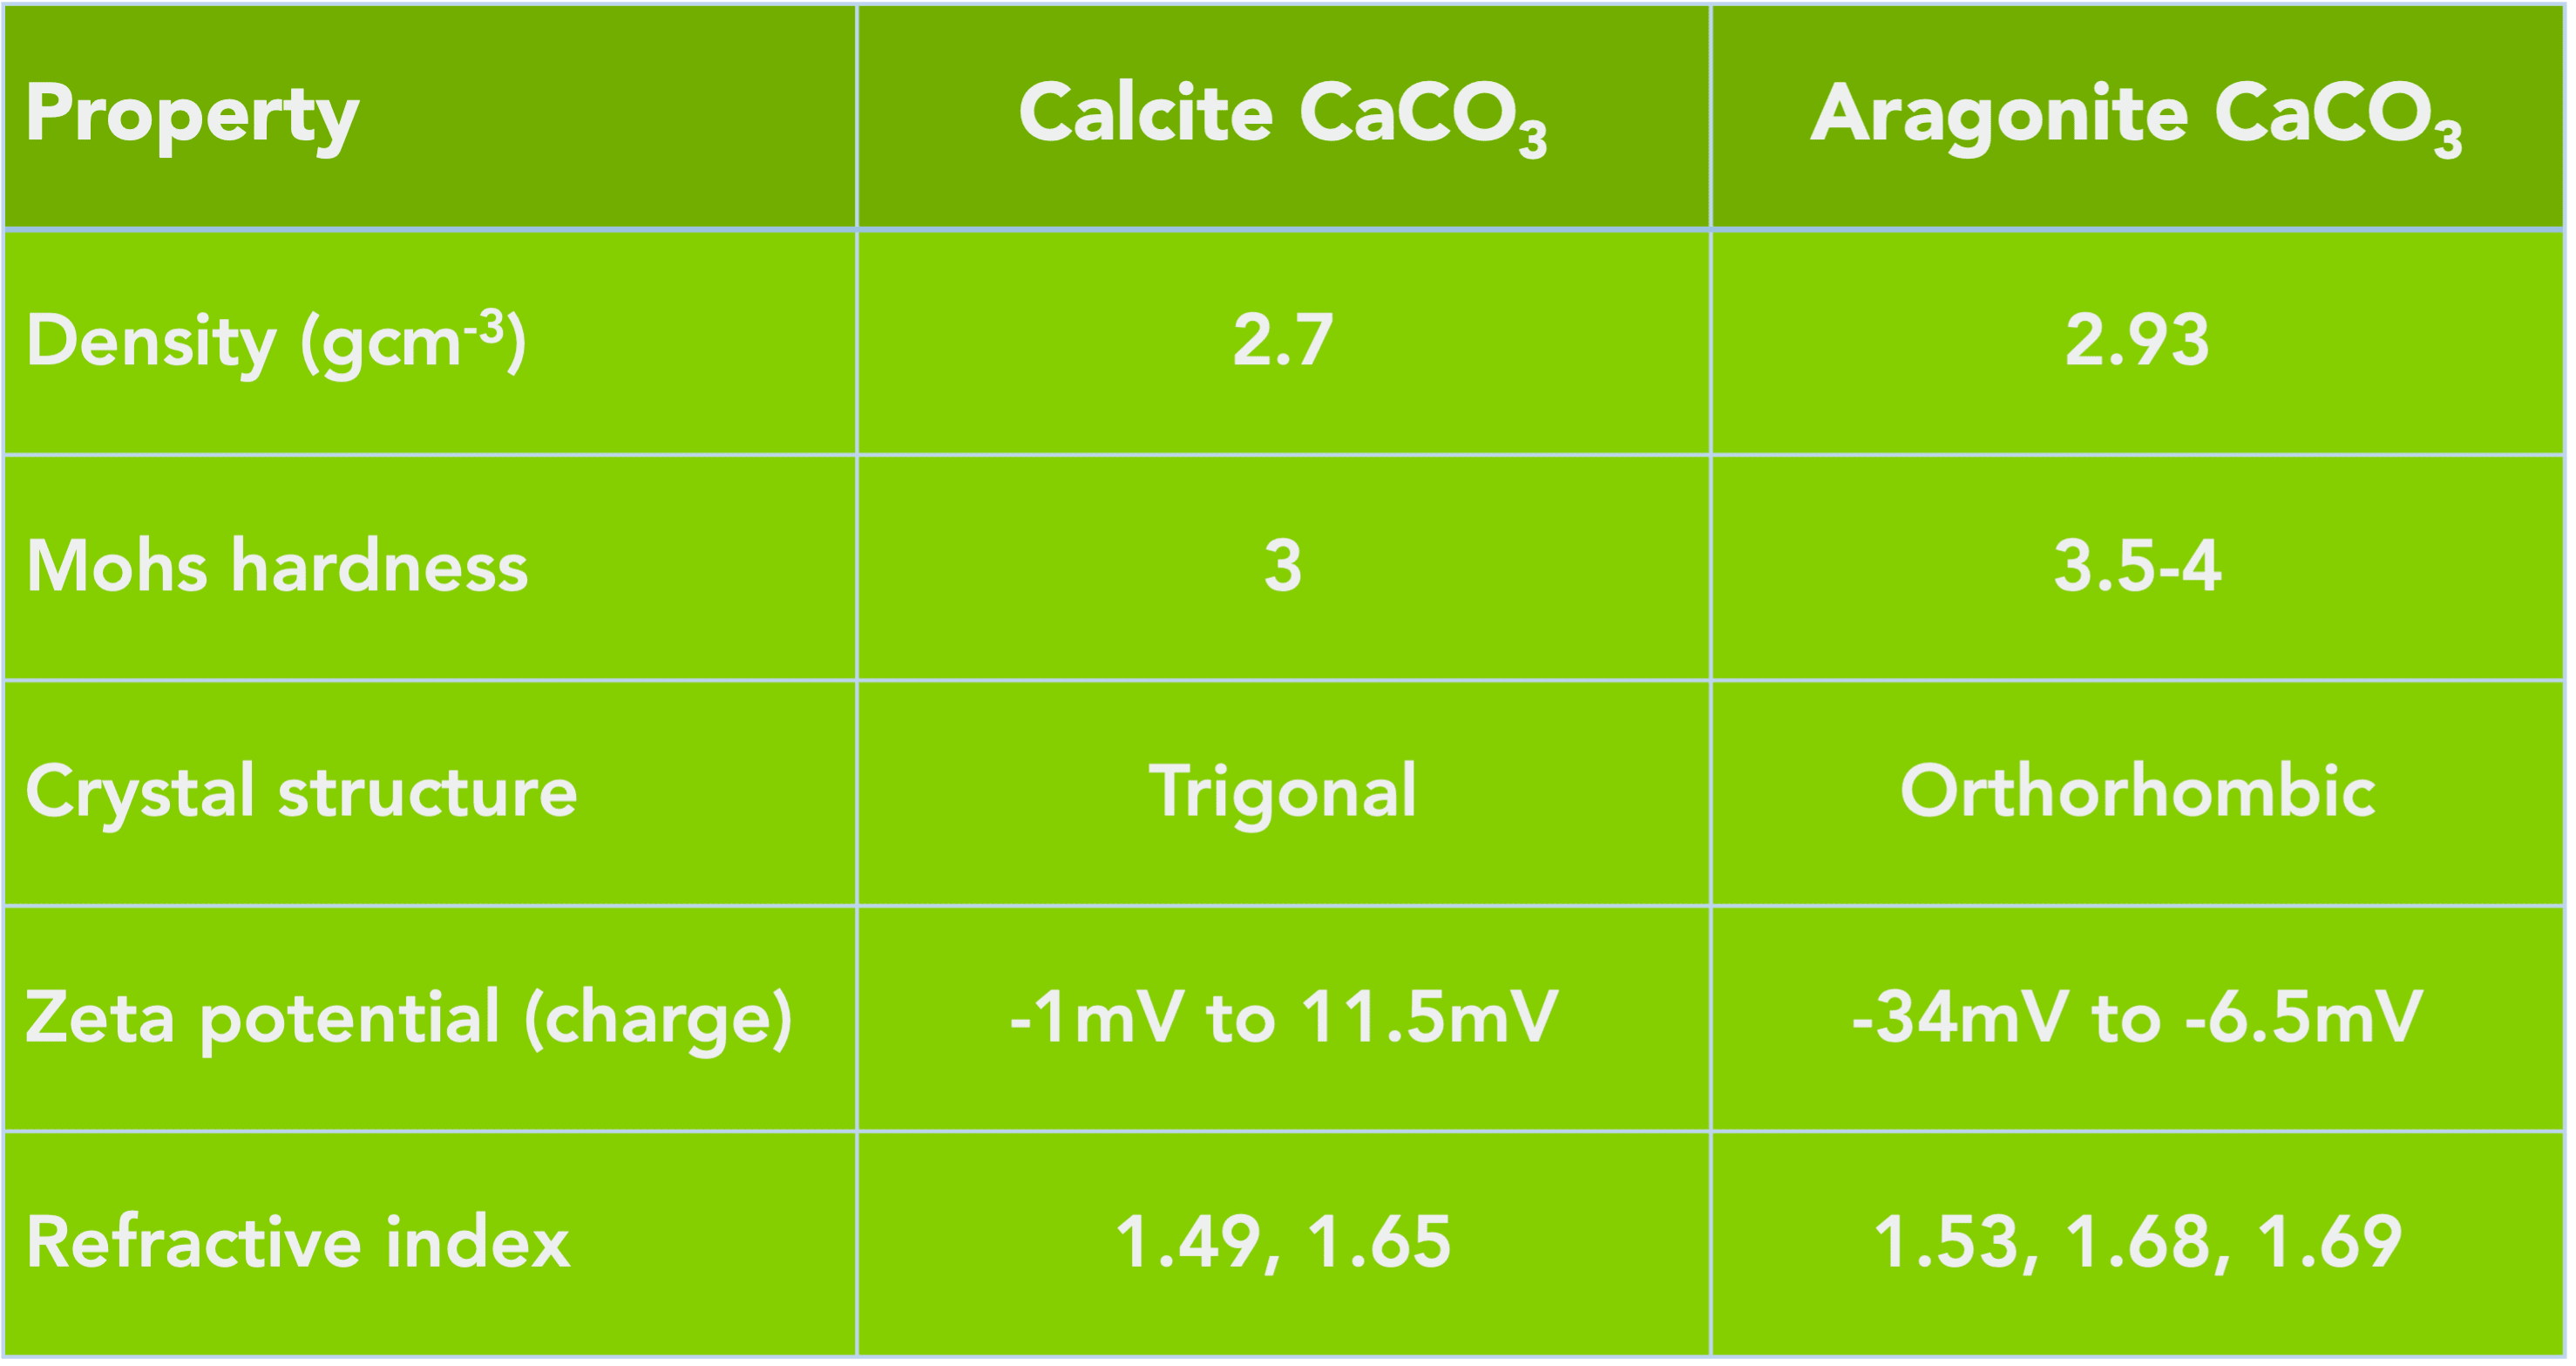 How Does Aragonite Compare to Calcite Calcium Carbonate?